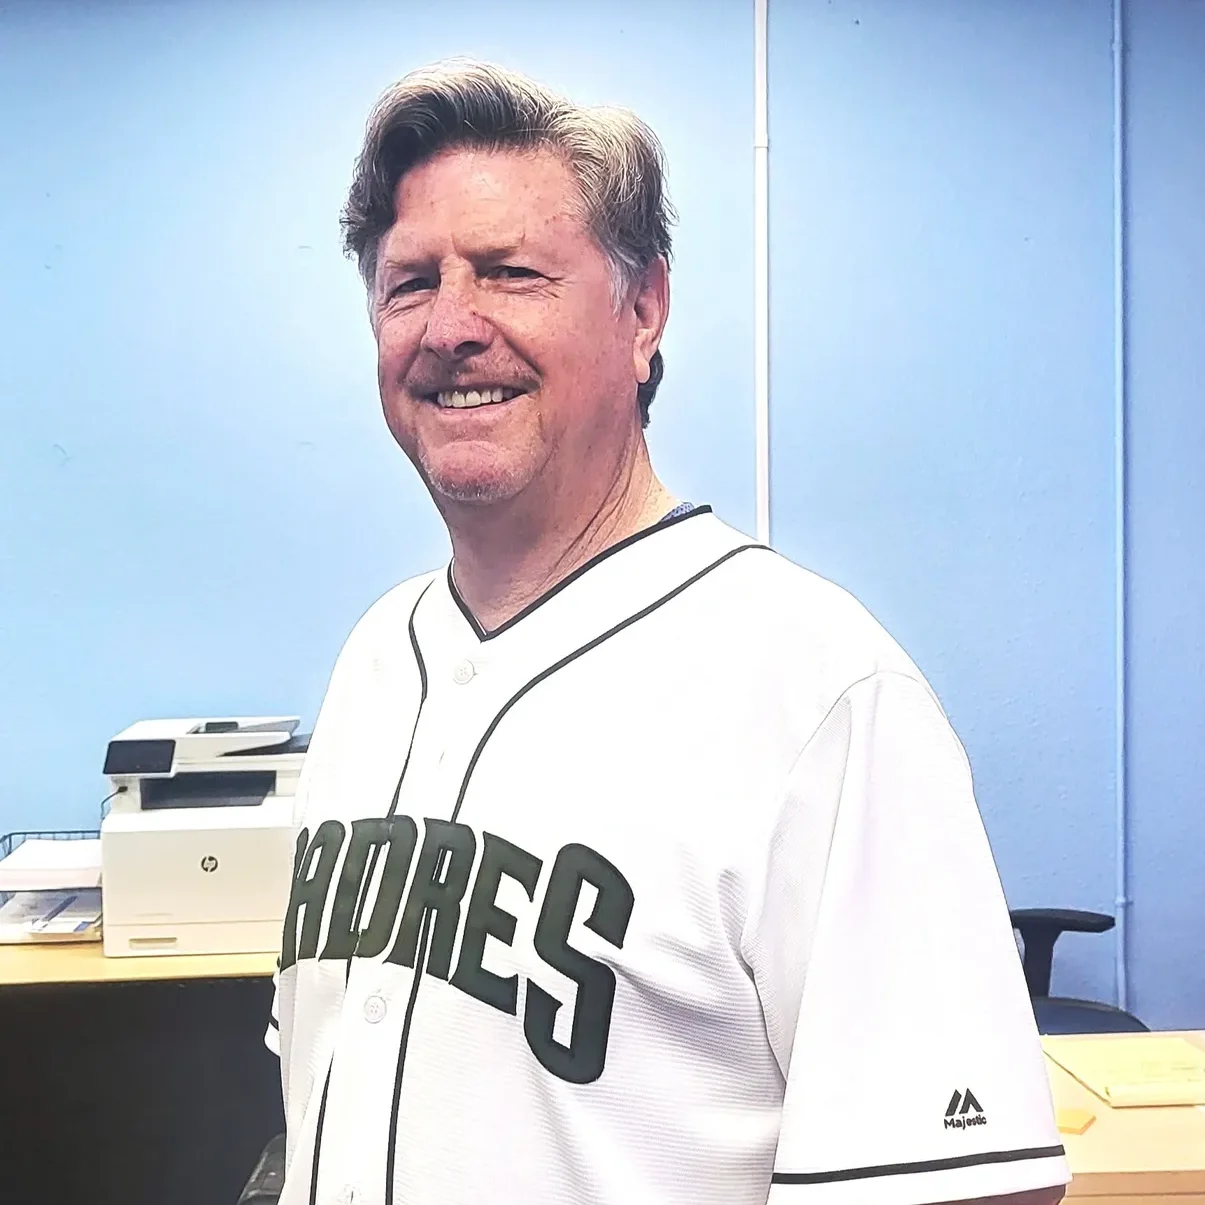 A man in a baseball uniform standing next to a desk.